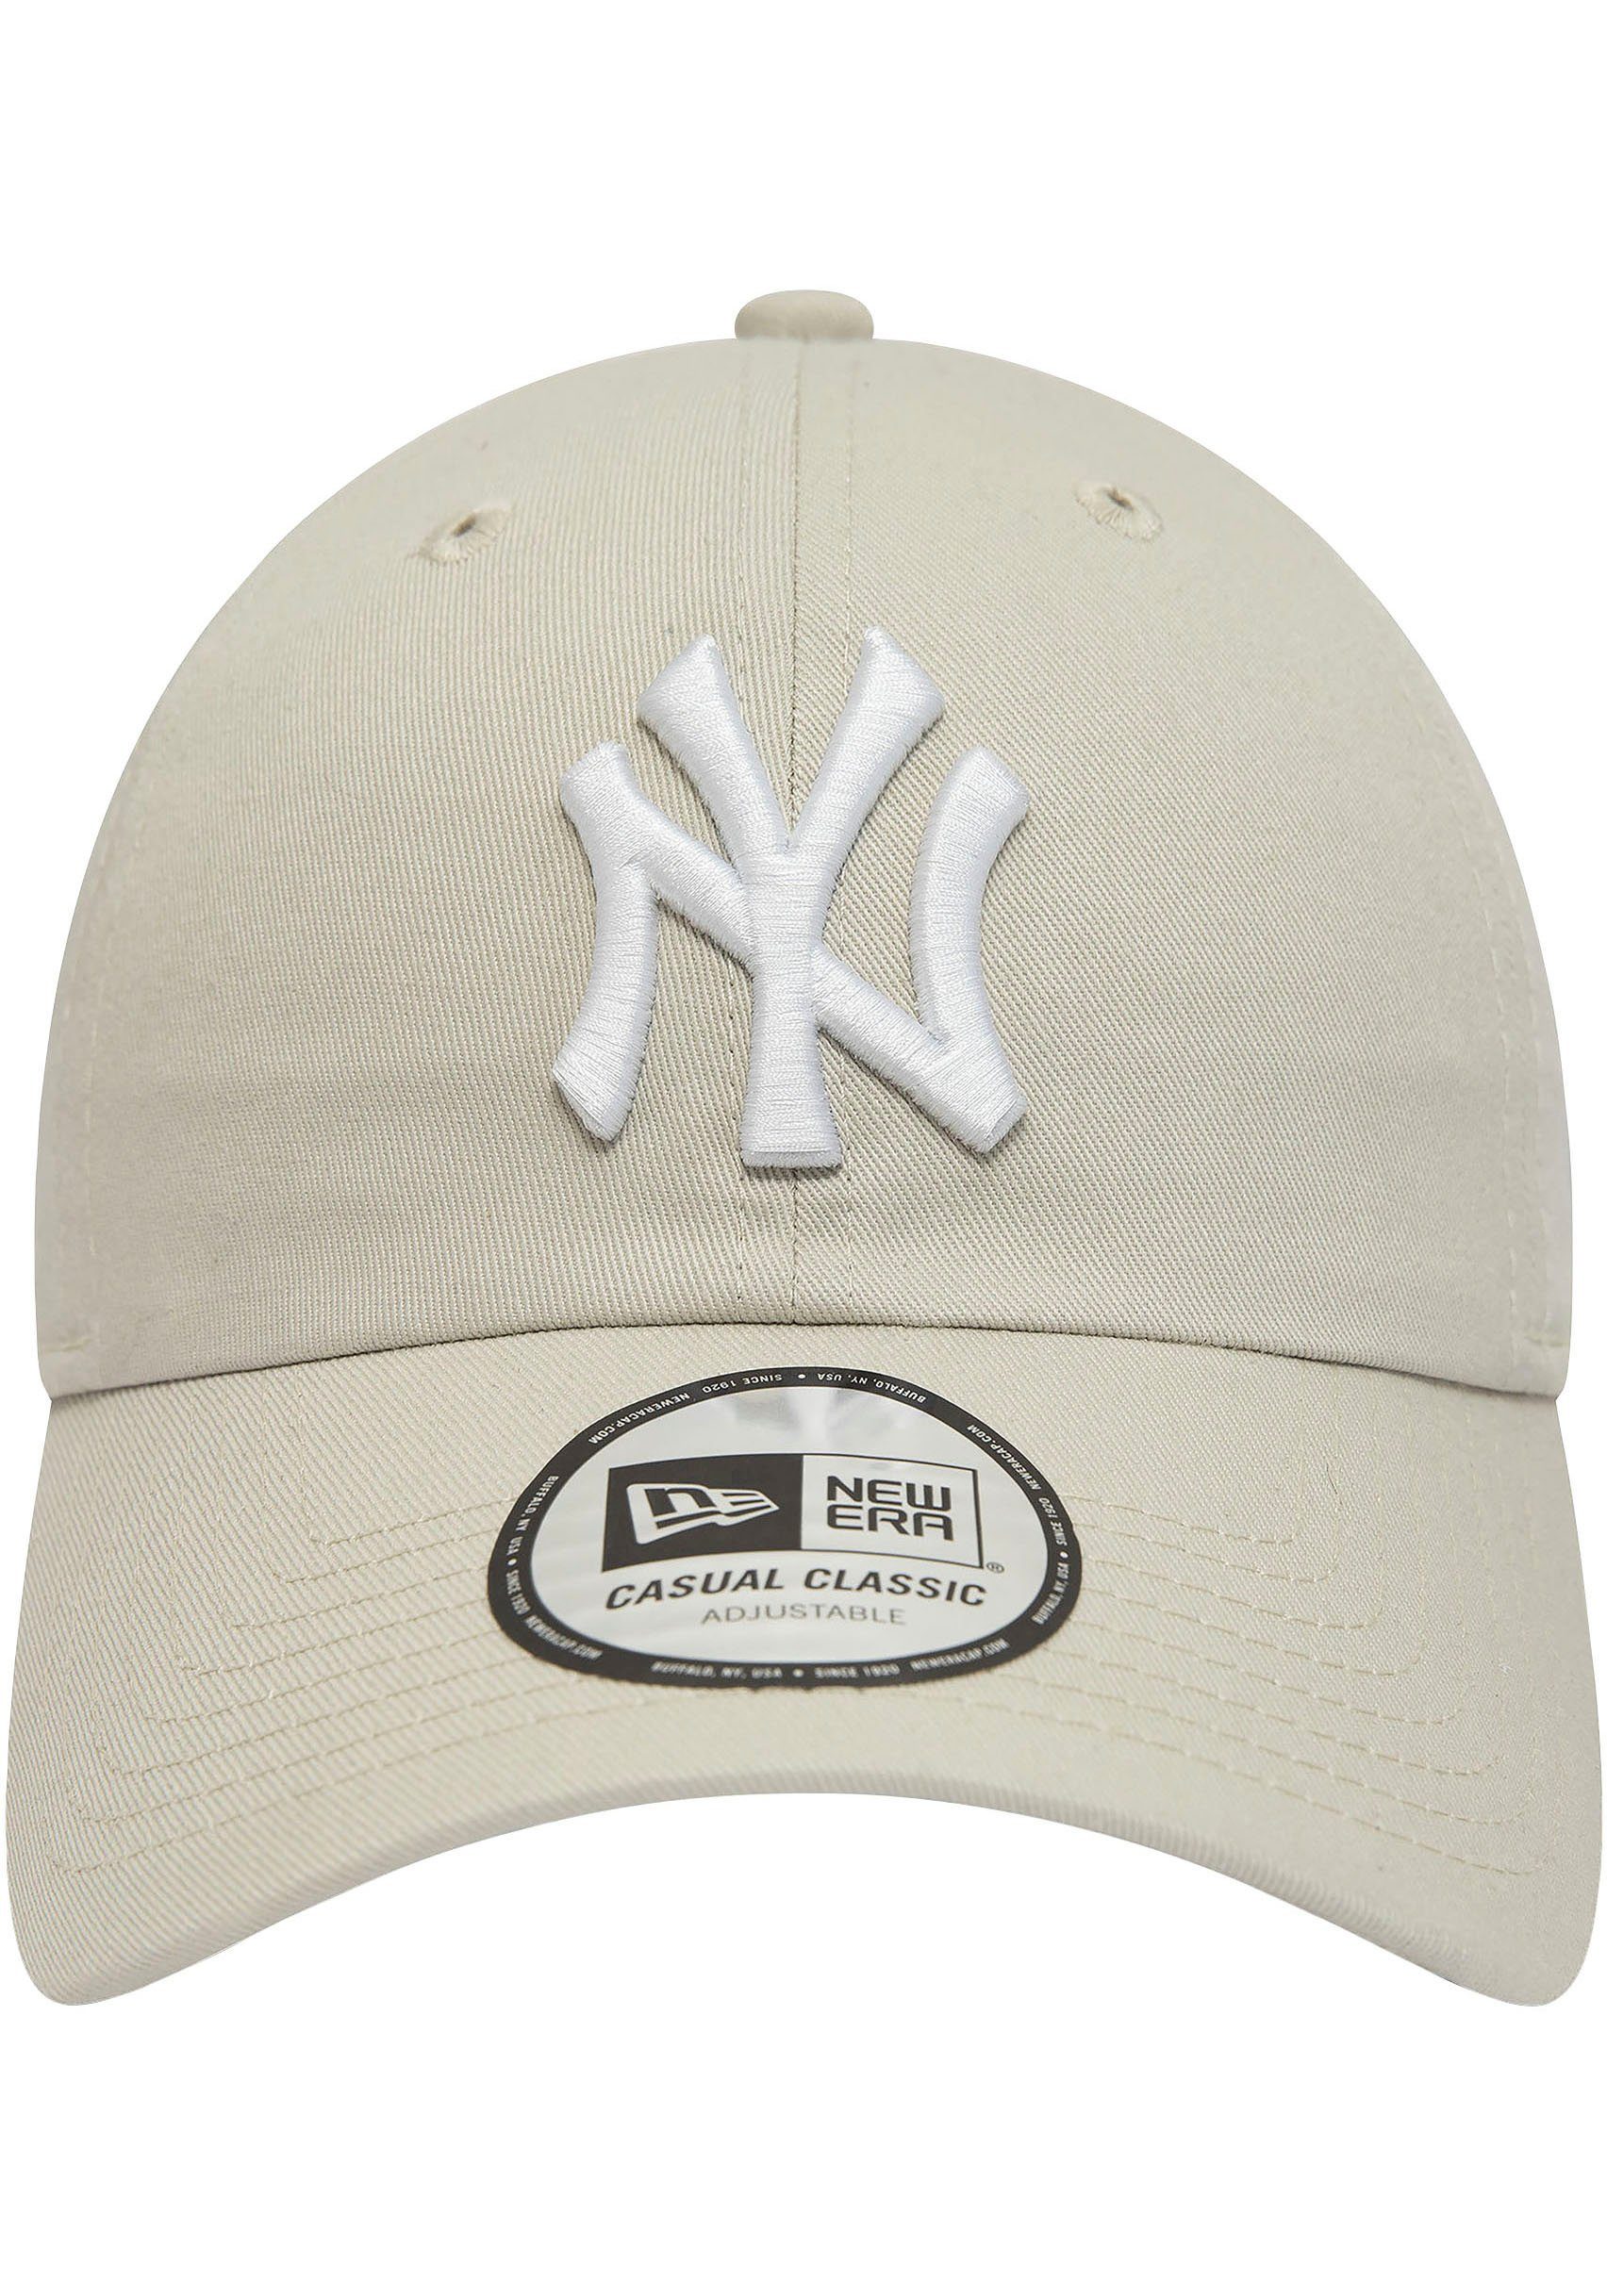 NY Baseball Baseball Era New Cap New Cap Cap 940Leag Era